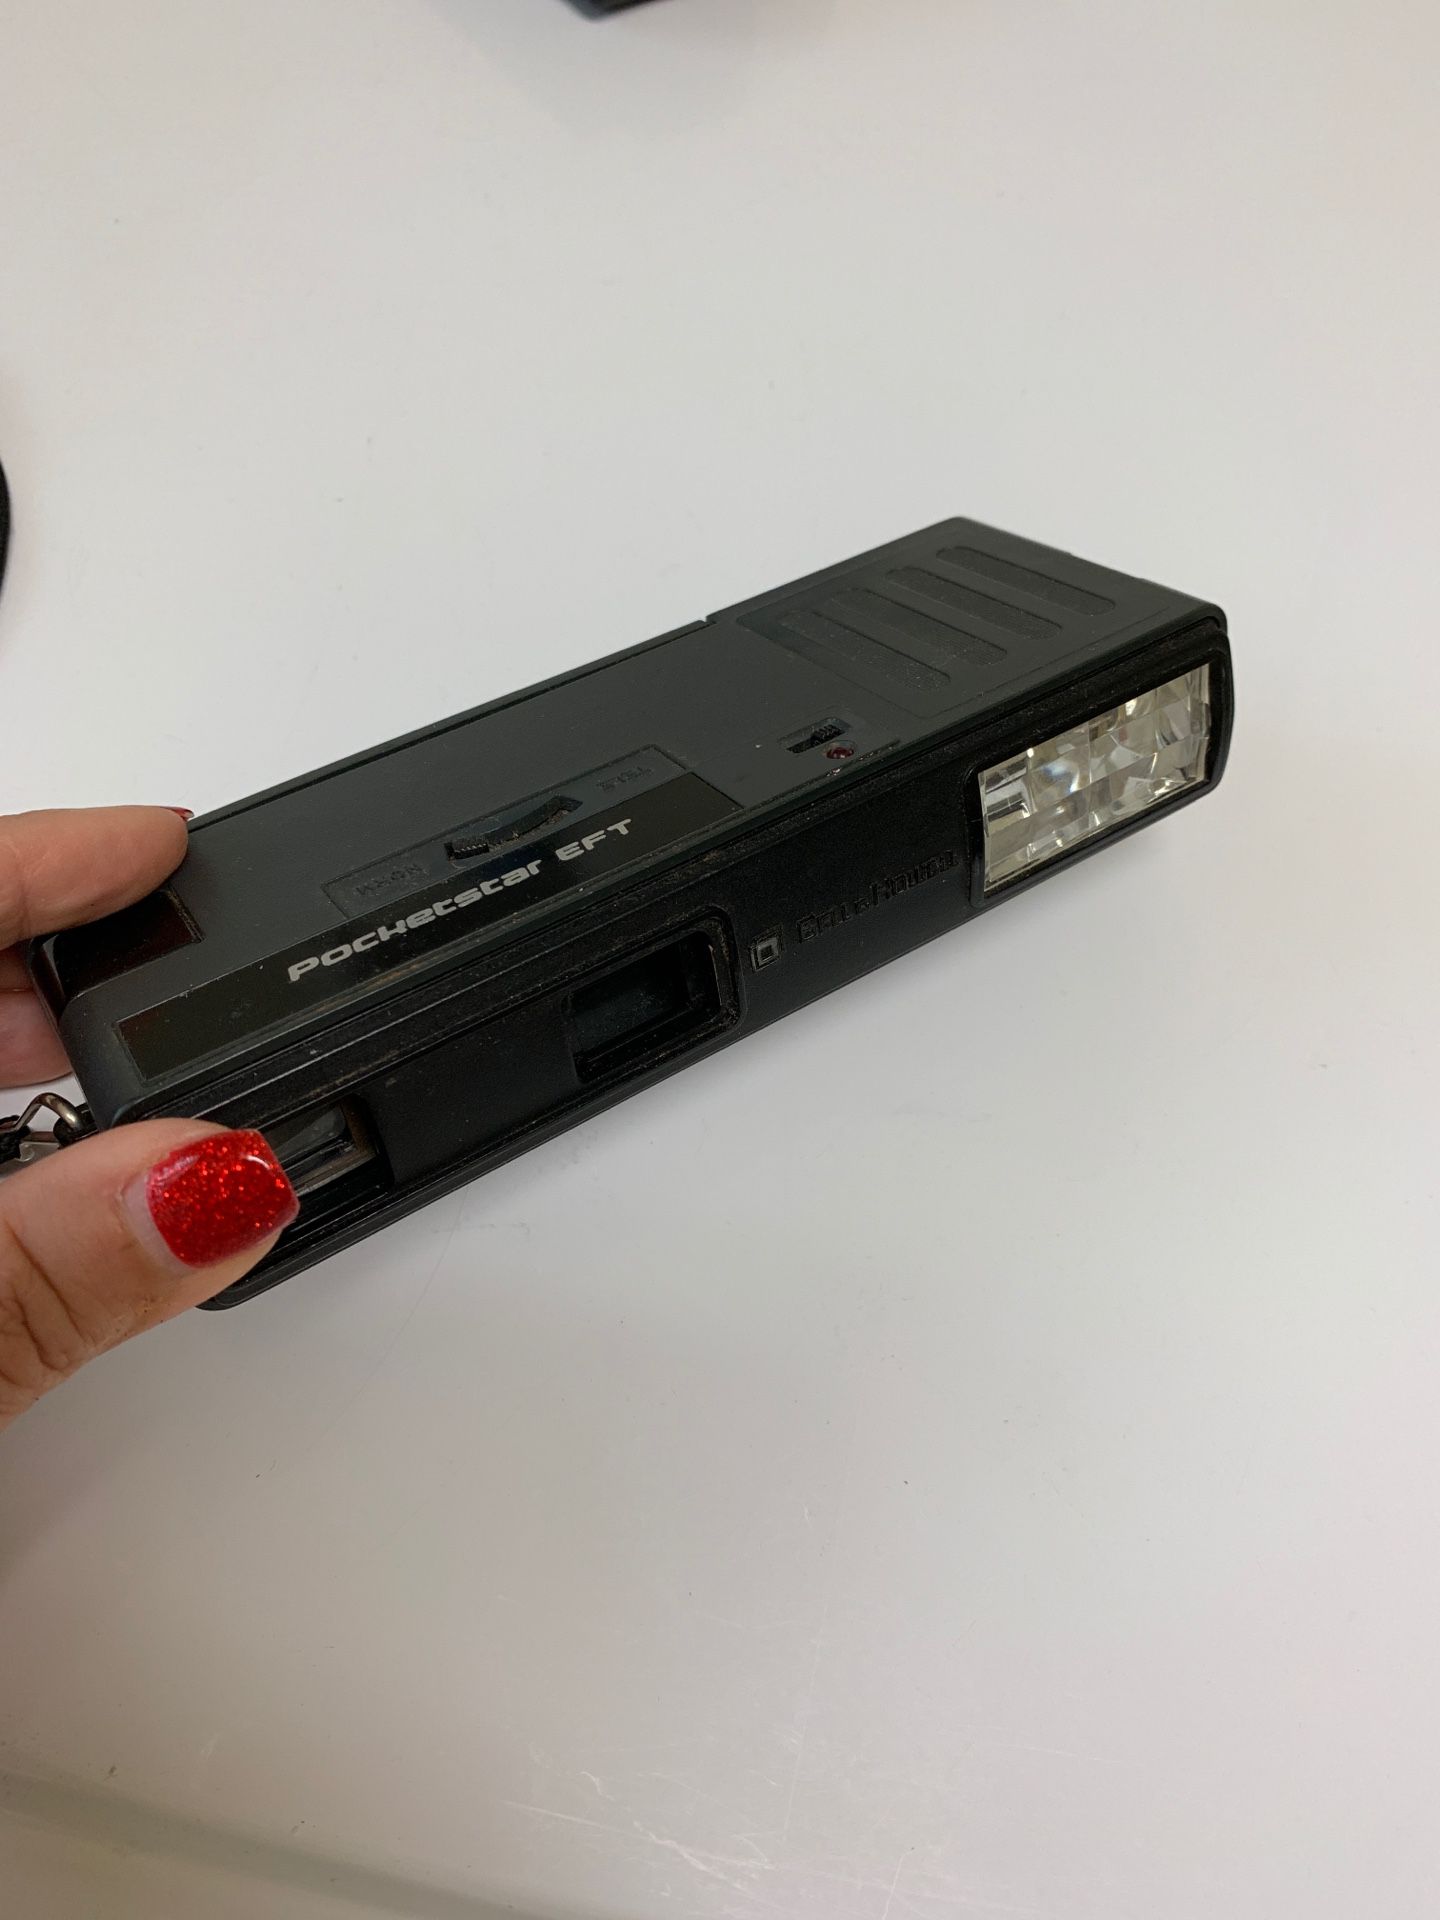 Pocketstar camera with film